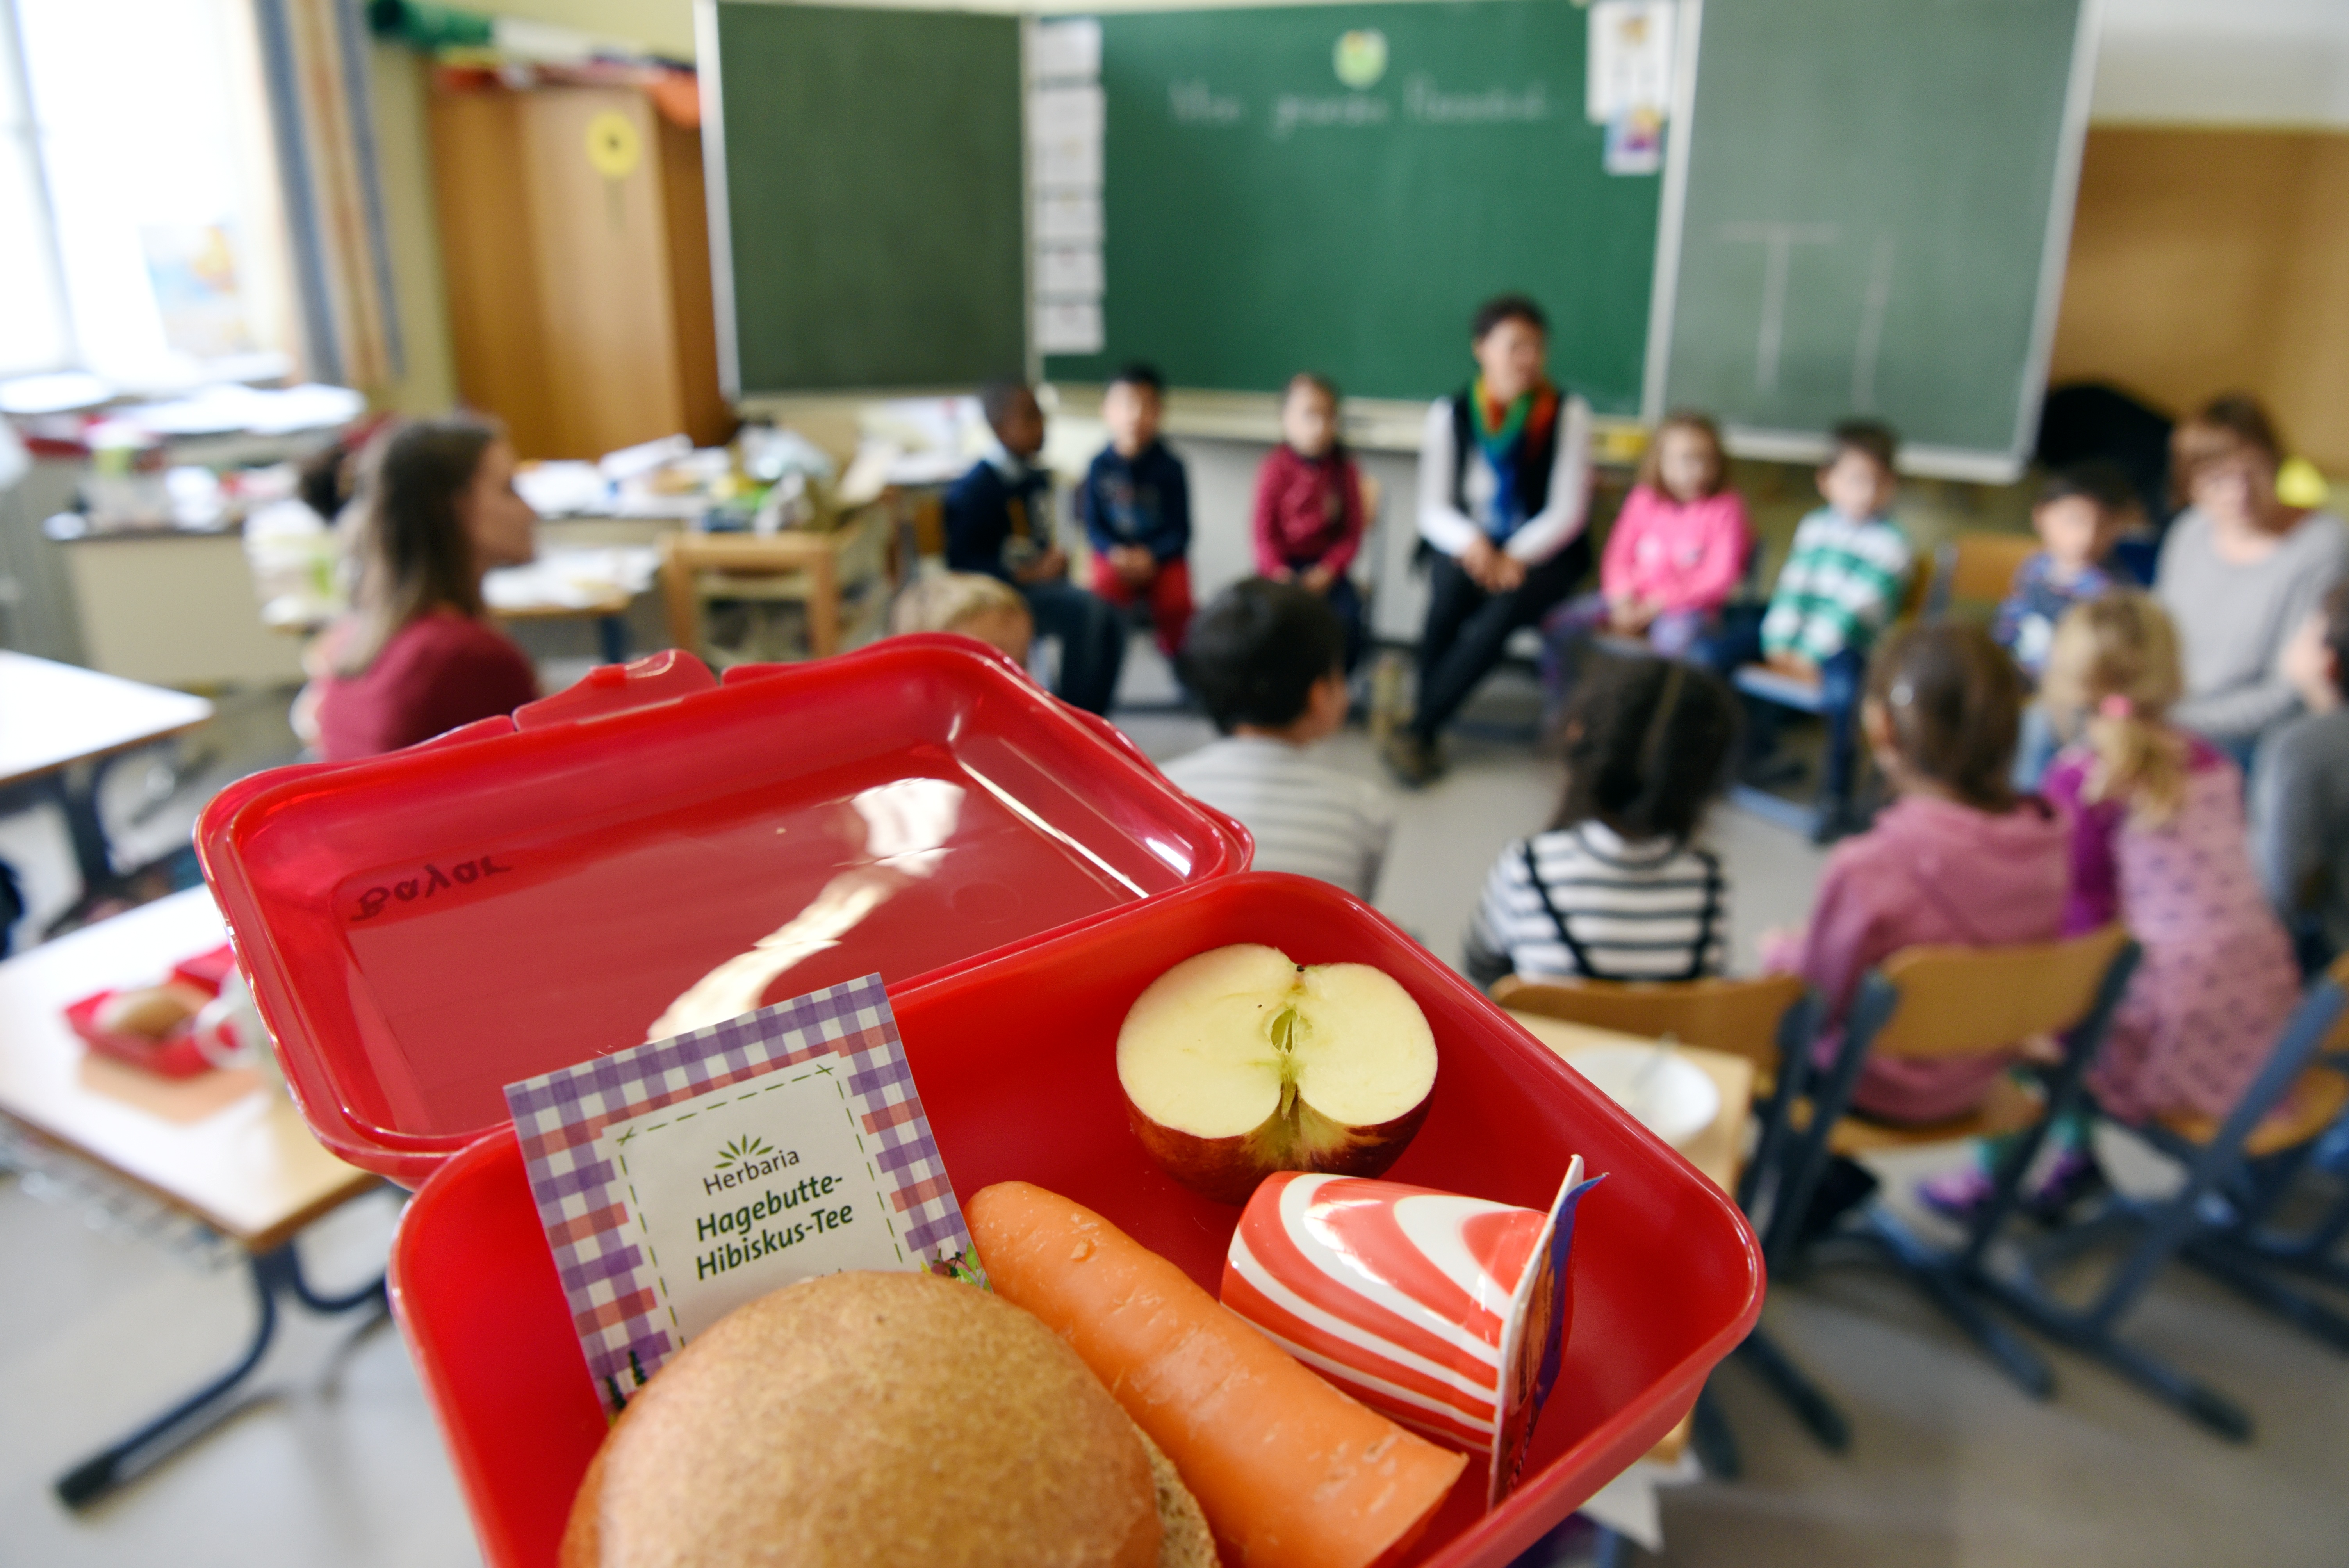 Im Vordergrund ist eine geöffnete Brotbox zu sehen. In der Box ist eine Semmel, eine Karotte, ein halber Apfel, ein Joghurt-Becher und ein Teebeutel. Im Hintergrund sitzt eine Schulklasse im Stuhlkreis vor der Tafel. 